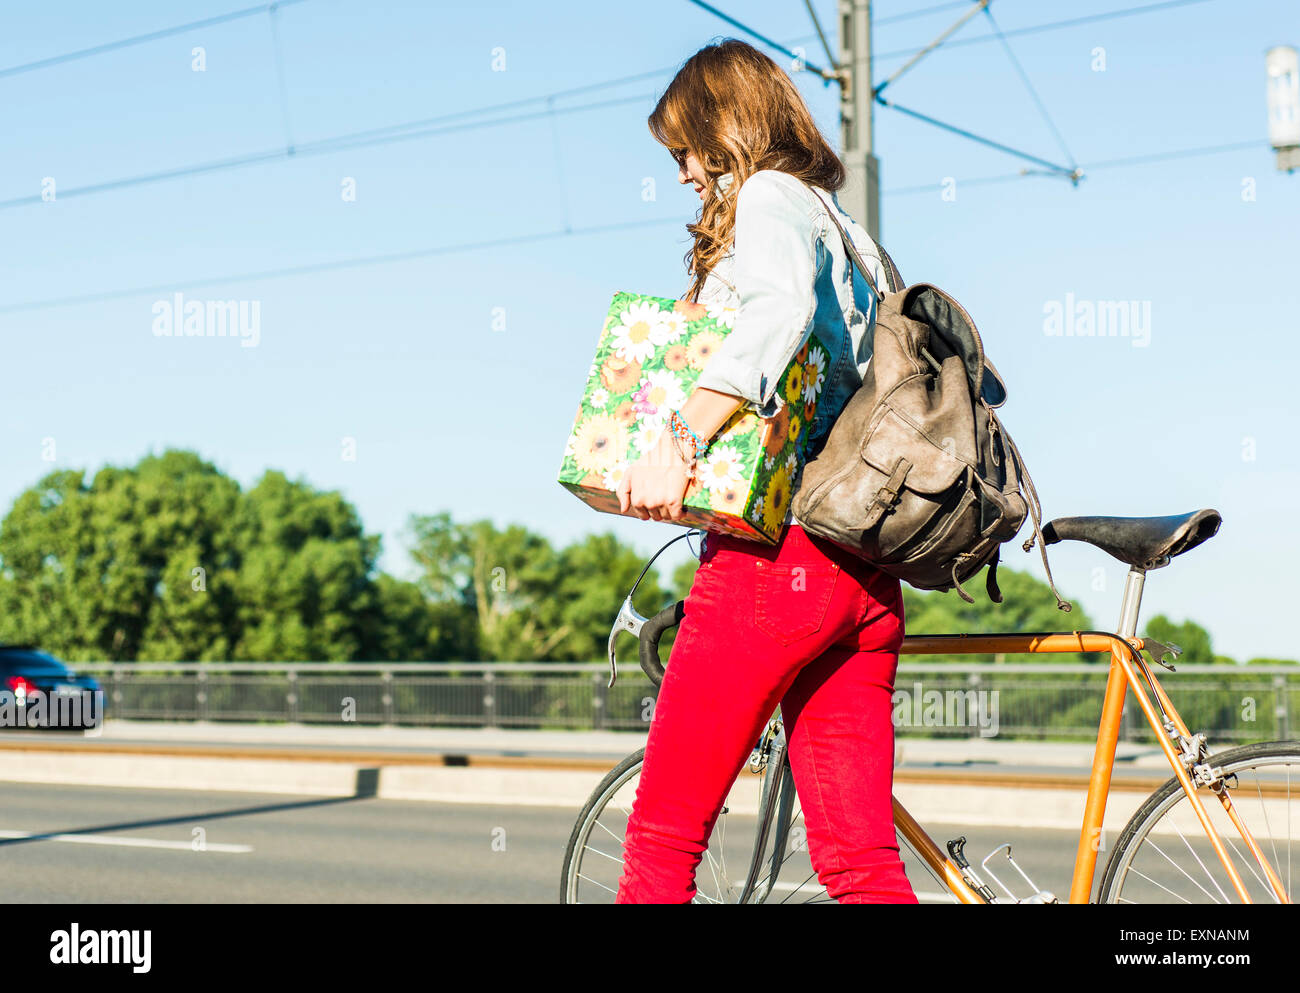 Jeune femme à vélo sur la rue holding gift box Banque D'Images